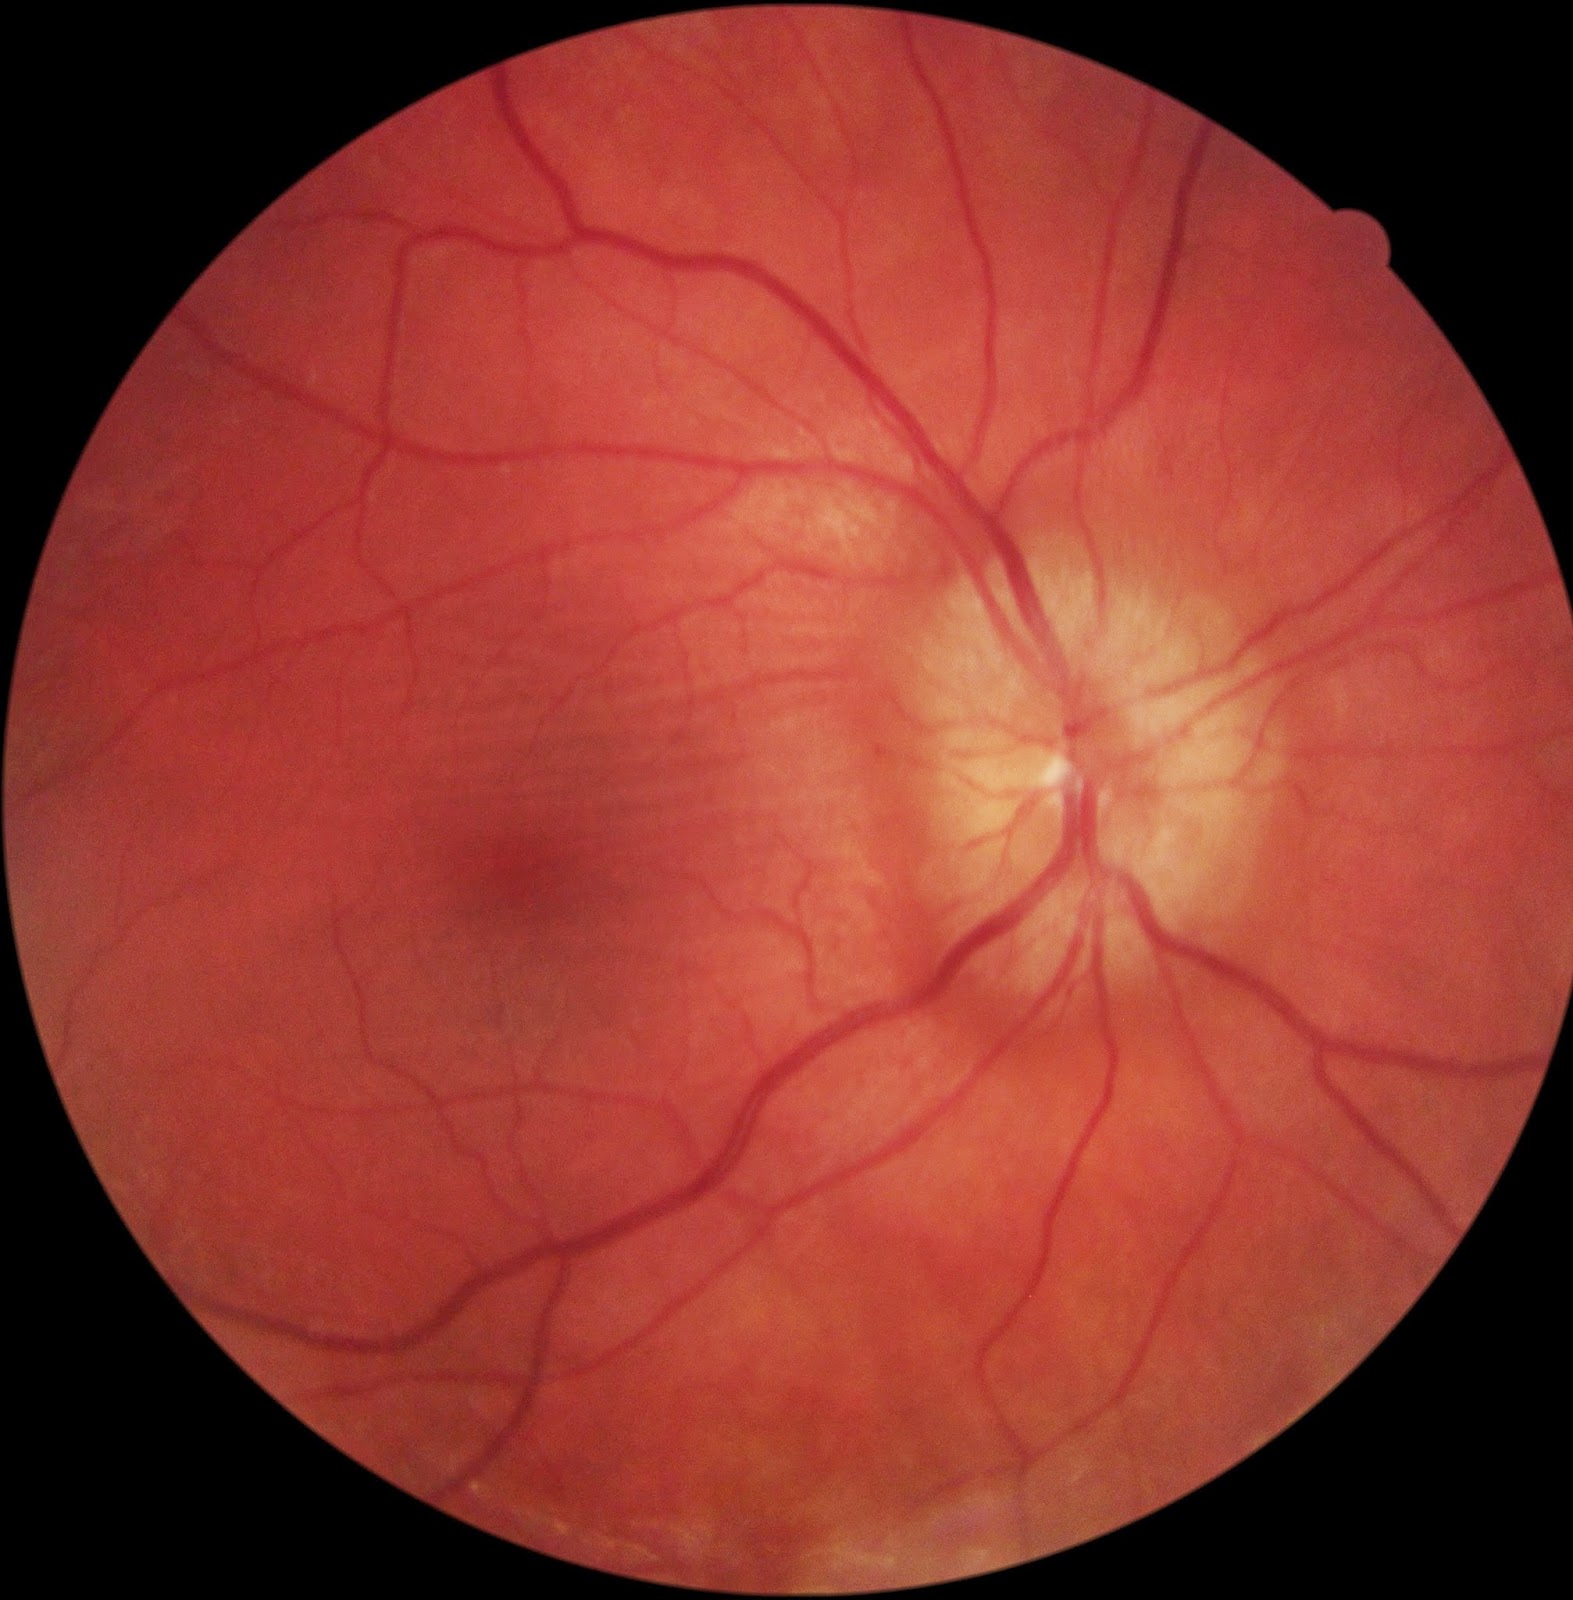 Finding Multiple Sclerosis During Your Eye Exam Eyedolatry